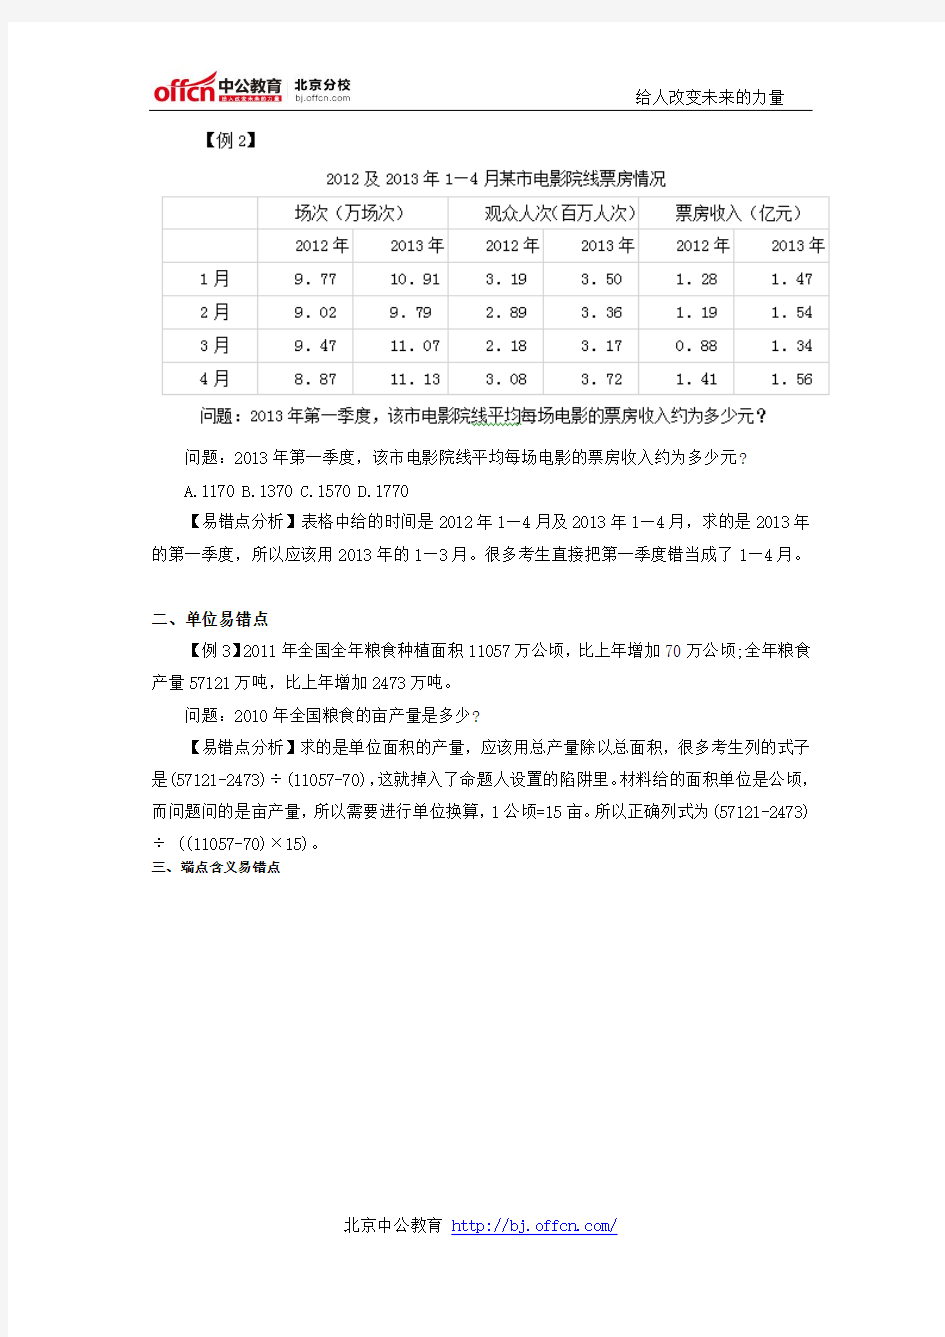 北京公务员考试行测答题技巧：2015京考资料分析陷阱类题目集锦